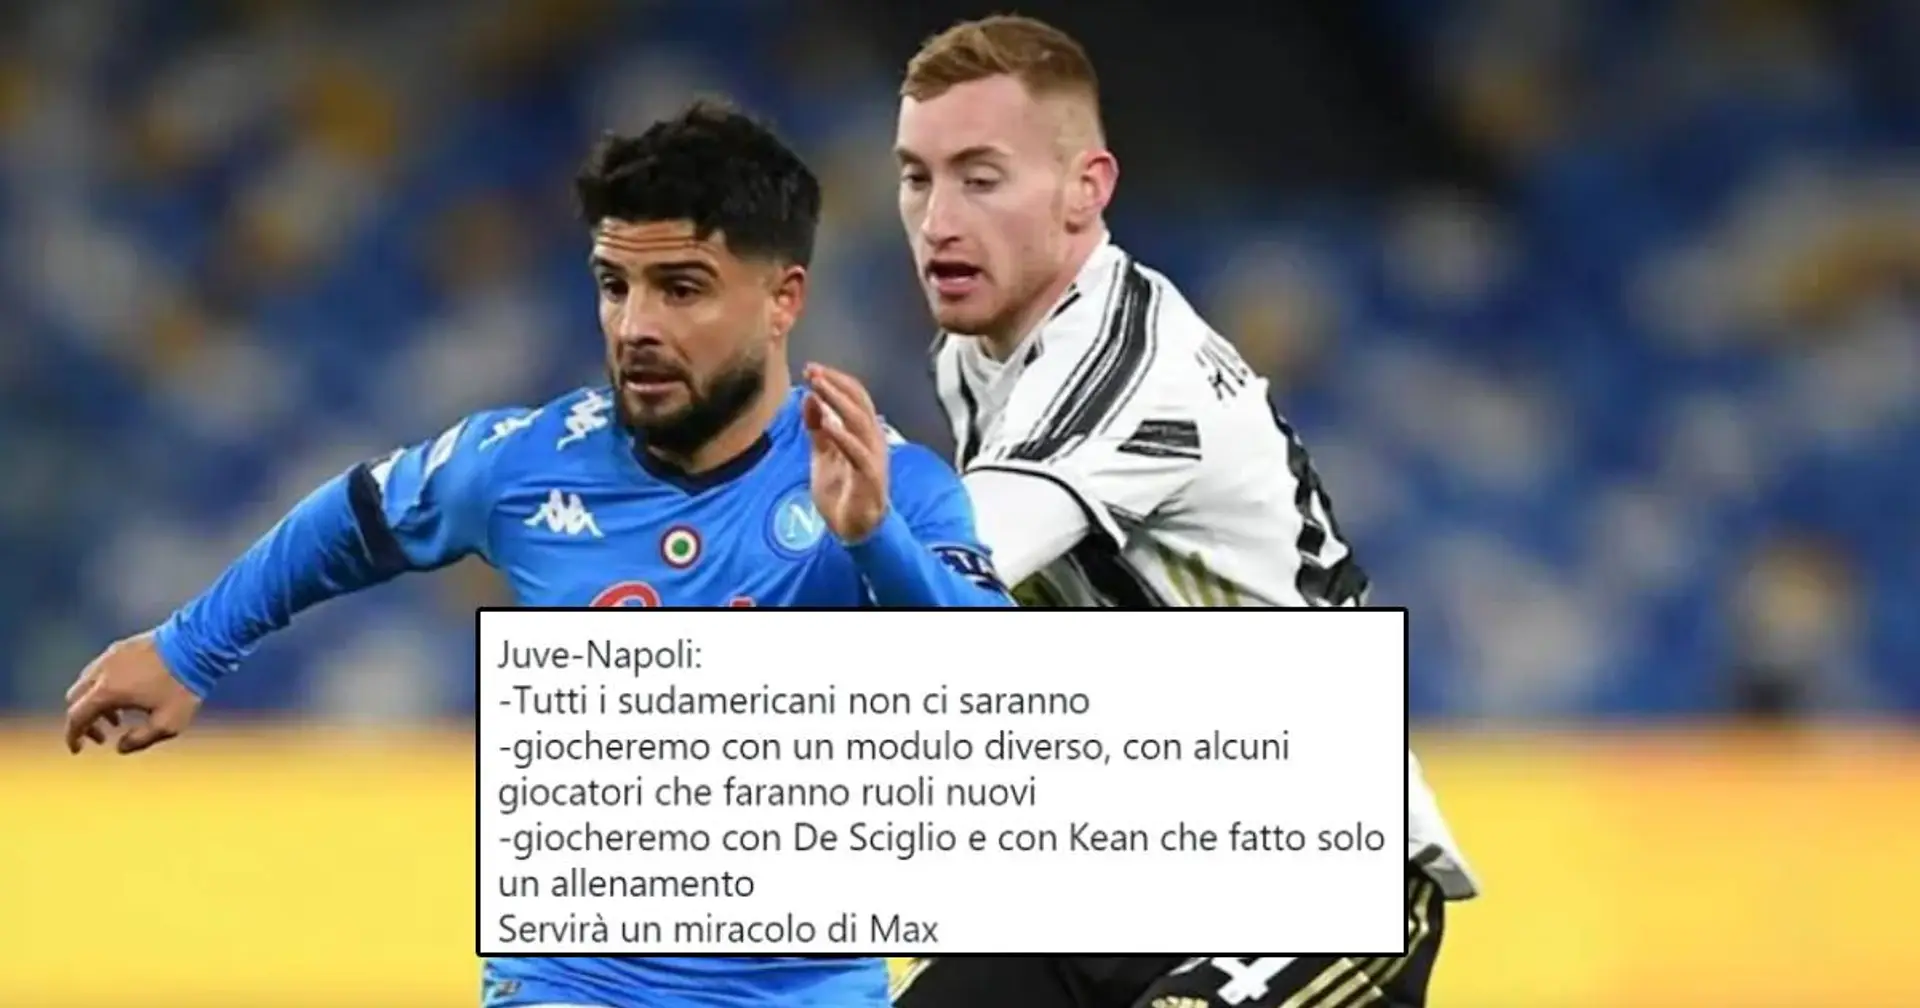 "La Juve attuale accetta tutto in silenzio!", la rabbia dei tifosi in vista della sfida contro il Napoli